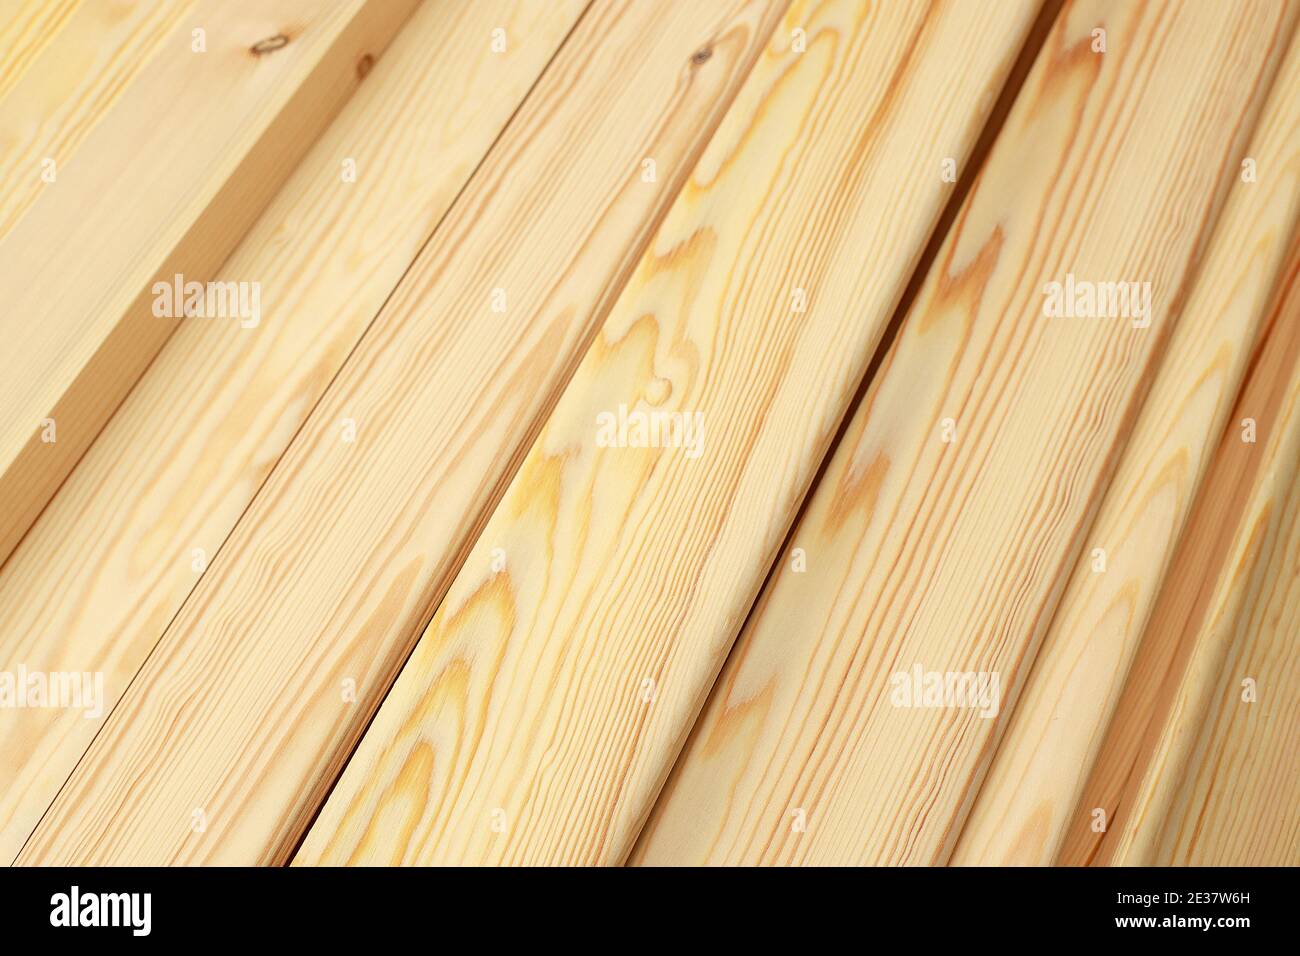 Les petites lattes ou planches en bois en gros plan se trouvent dans une pile. C'est un bois poli noble dans l'atelier de menuiserie. Banque D'Images